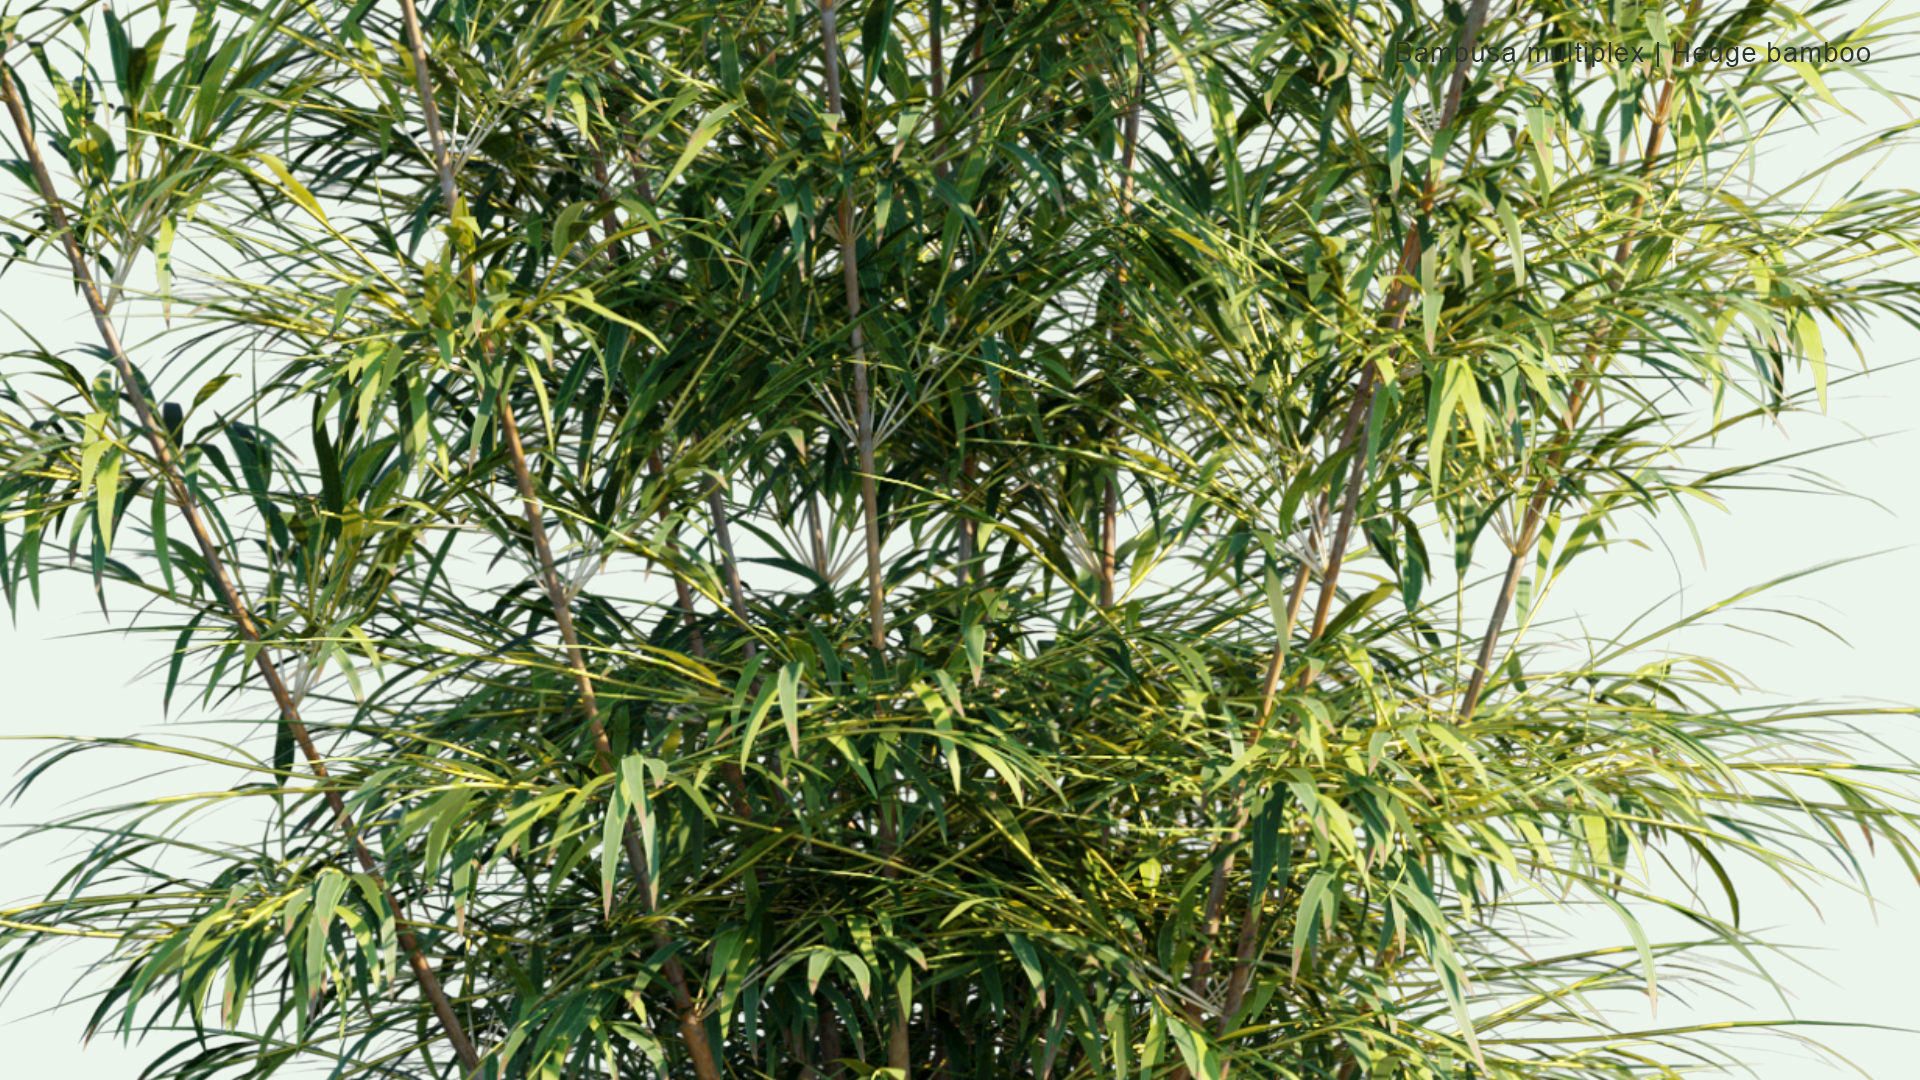 2D Bambusa Multiplex - Hedge Bamboo